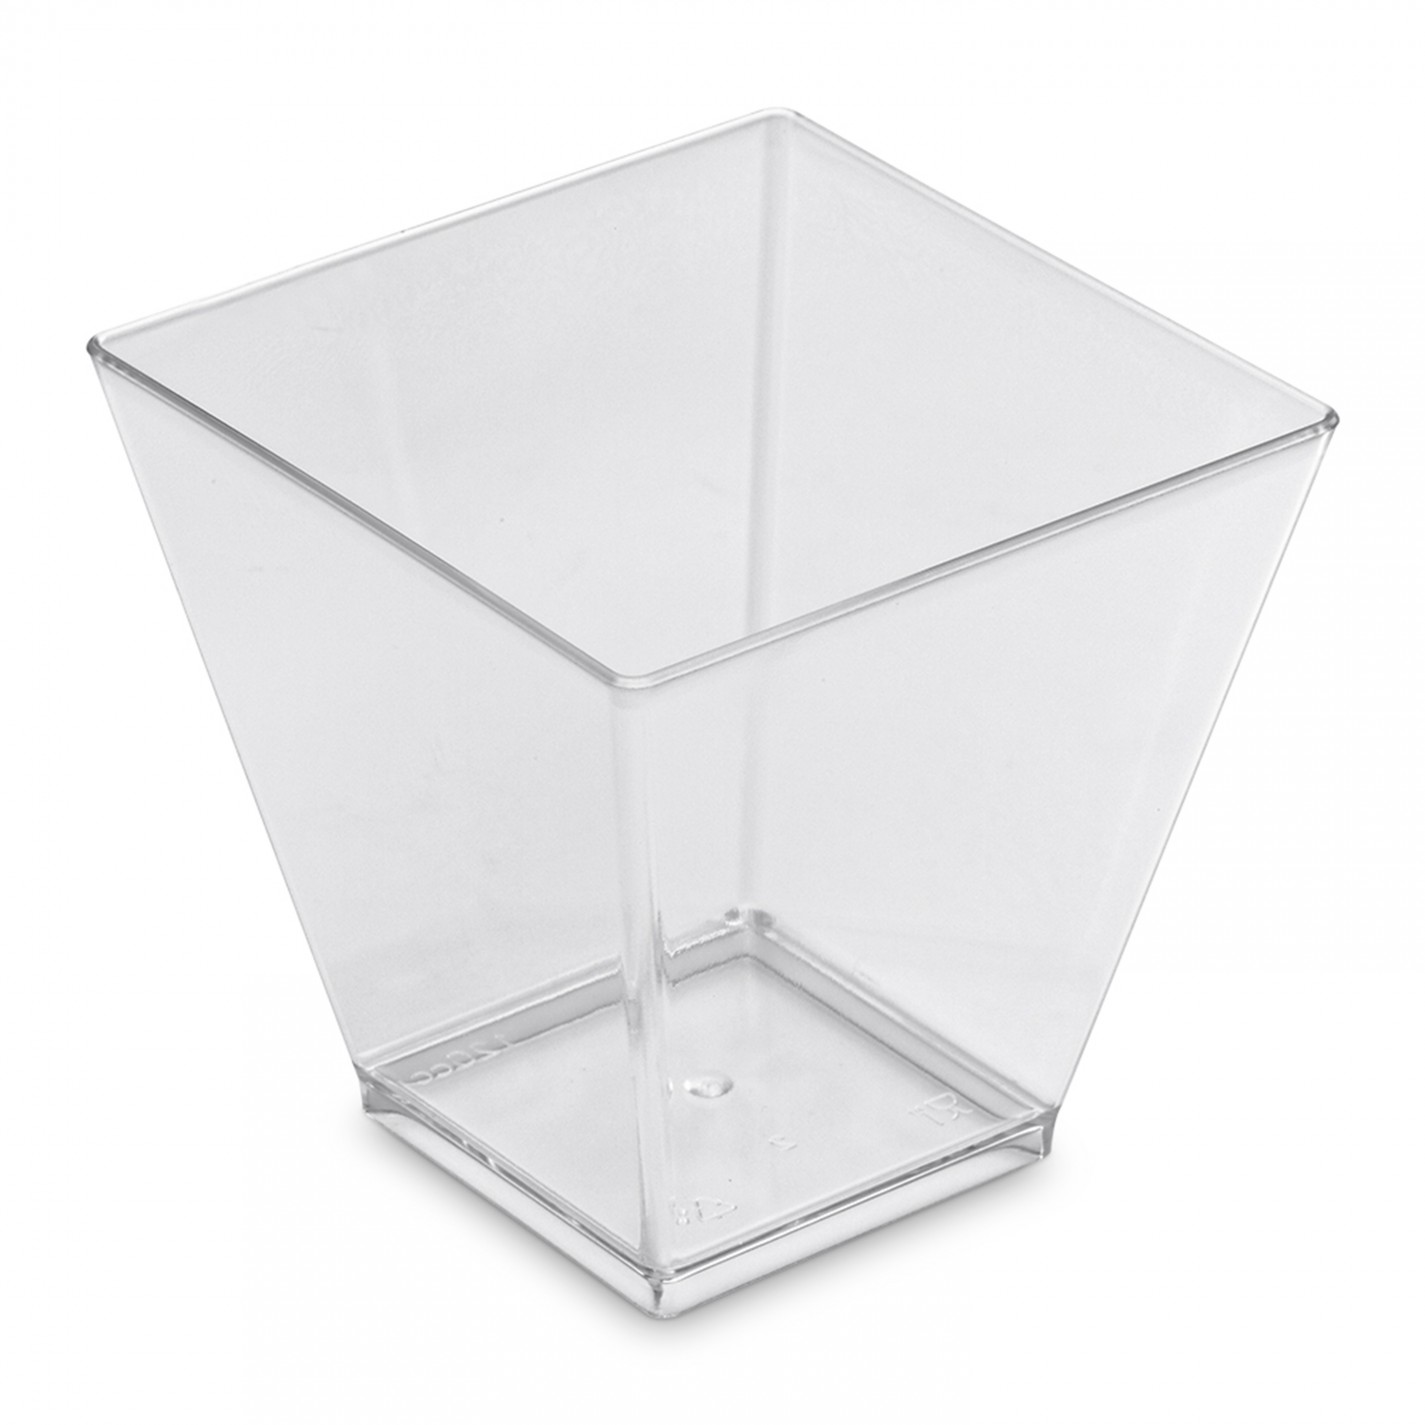 Verrine plastique transparente, contenance 6 cl, forme pyramidale, élégante.